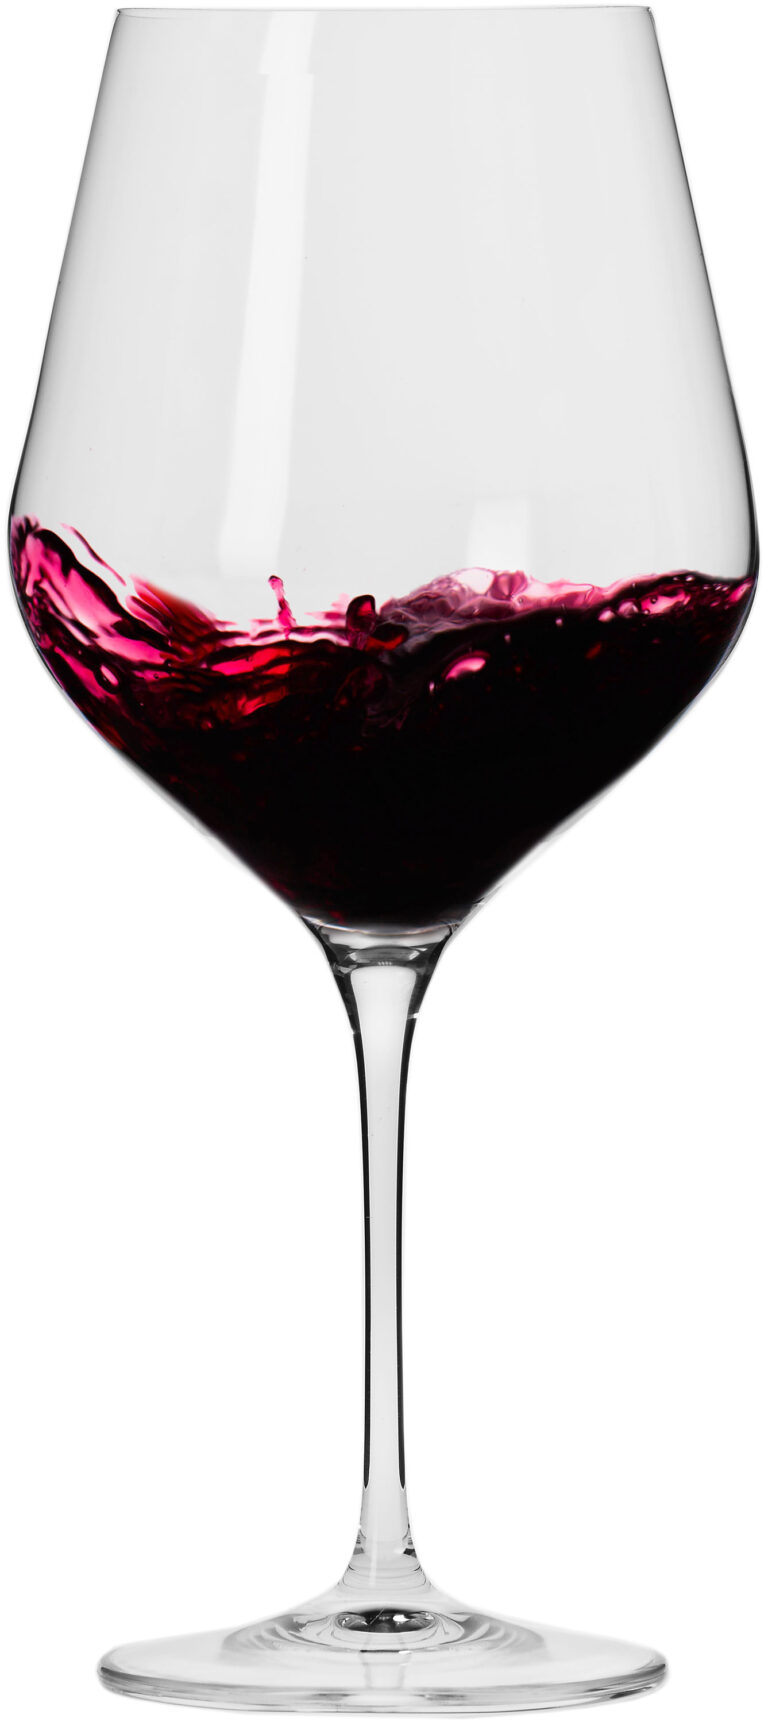 סט 6 כוסות יין אדום 850 מ"ל Krosno Splendour Collection Red Wine Glass